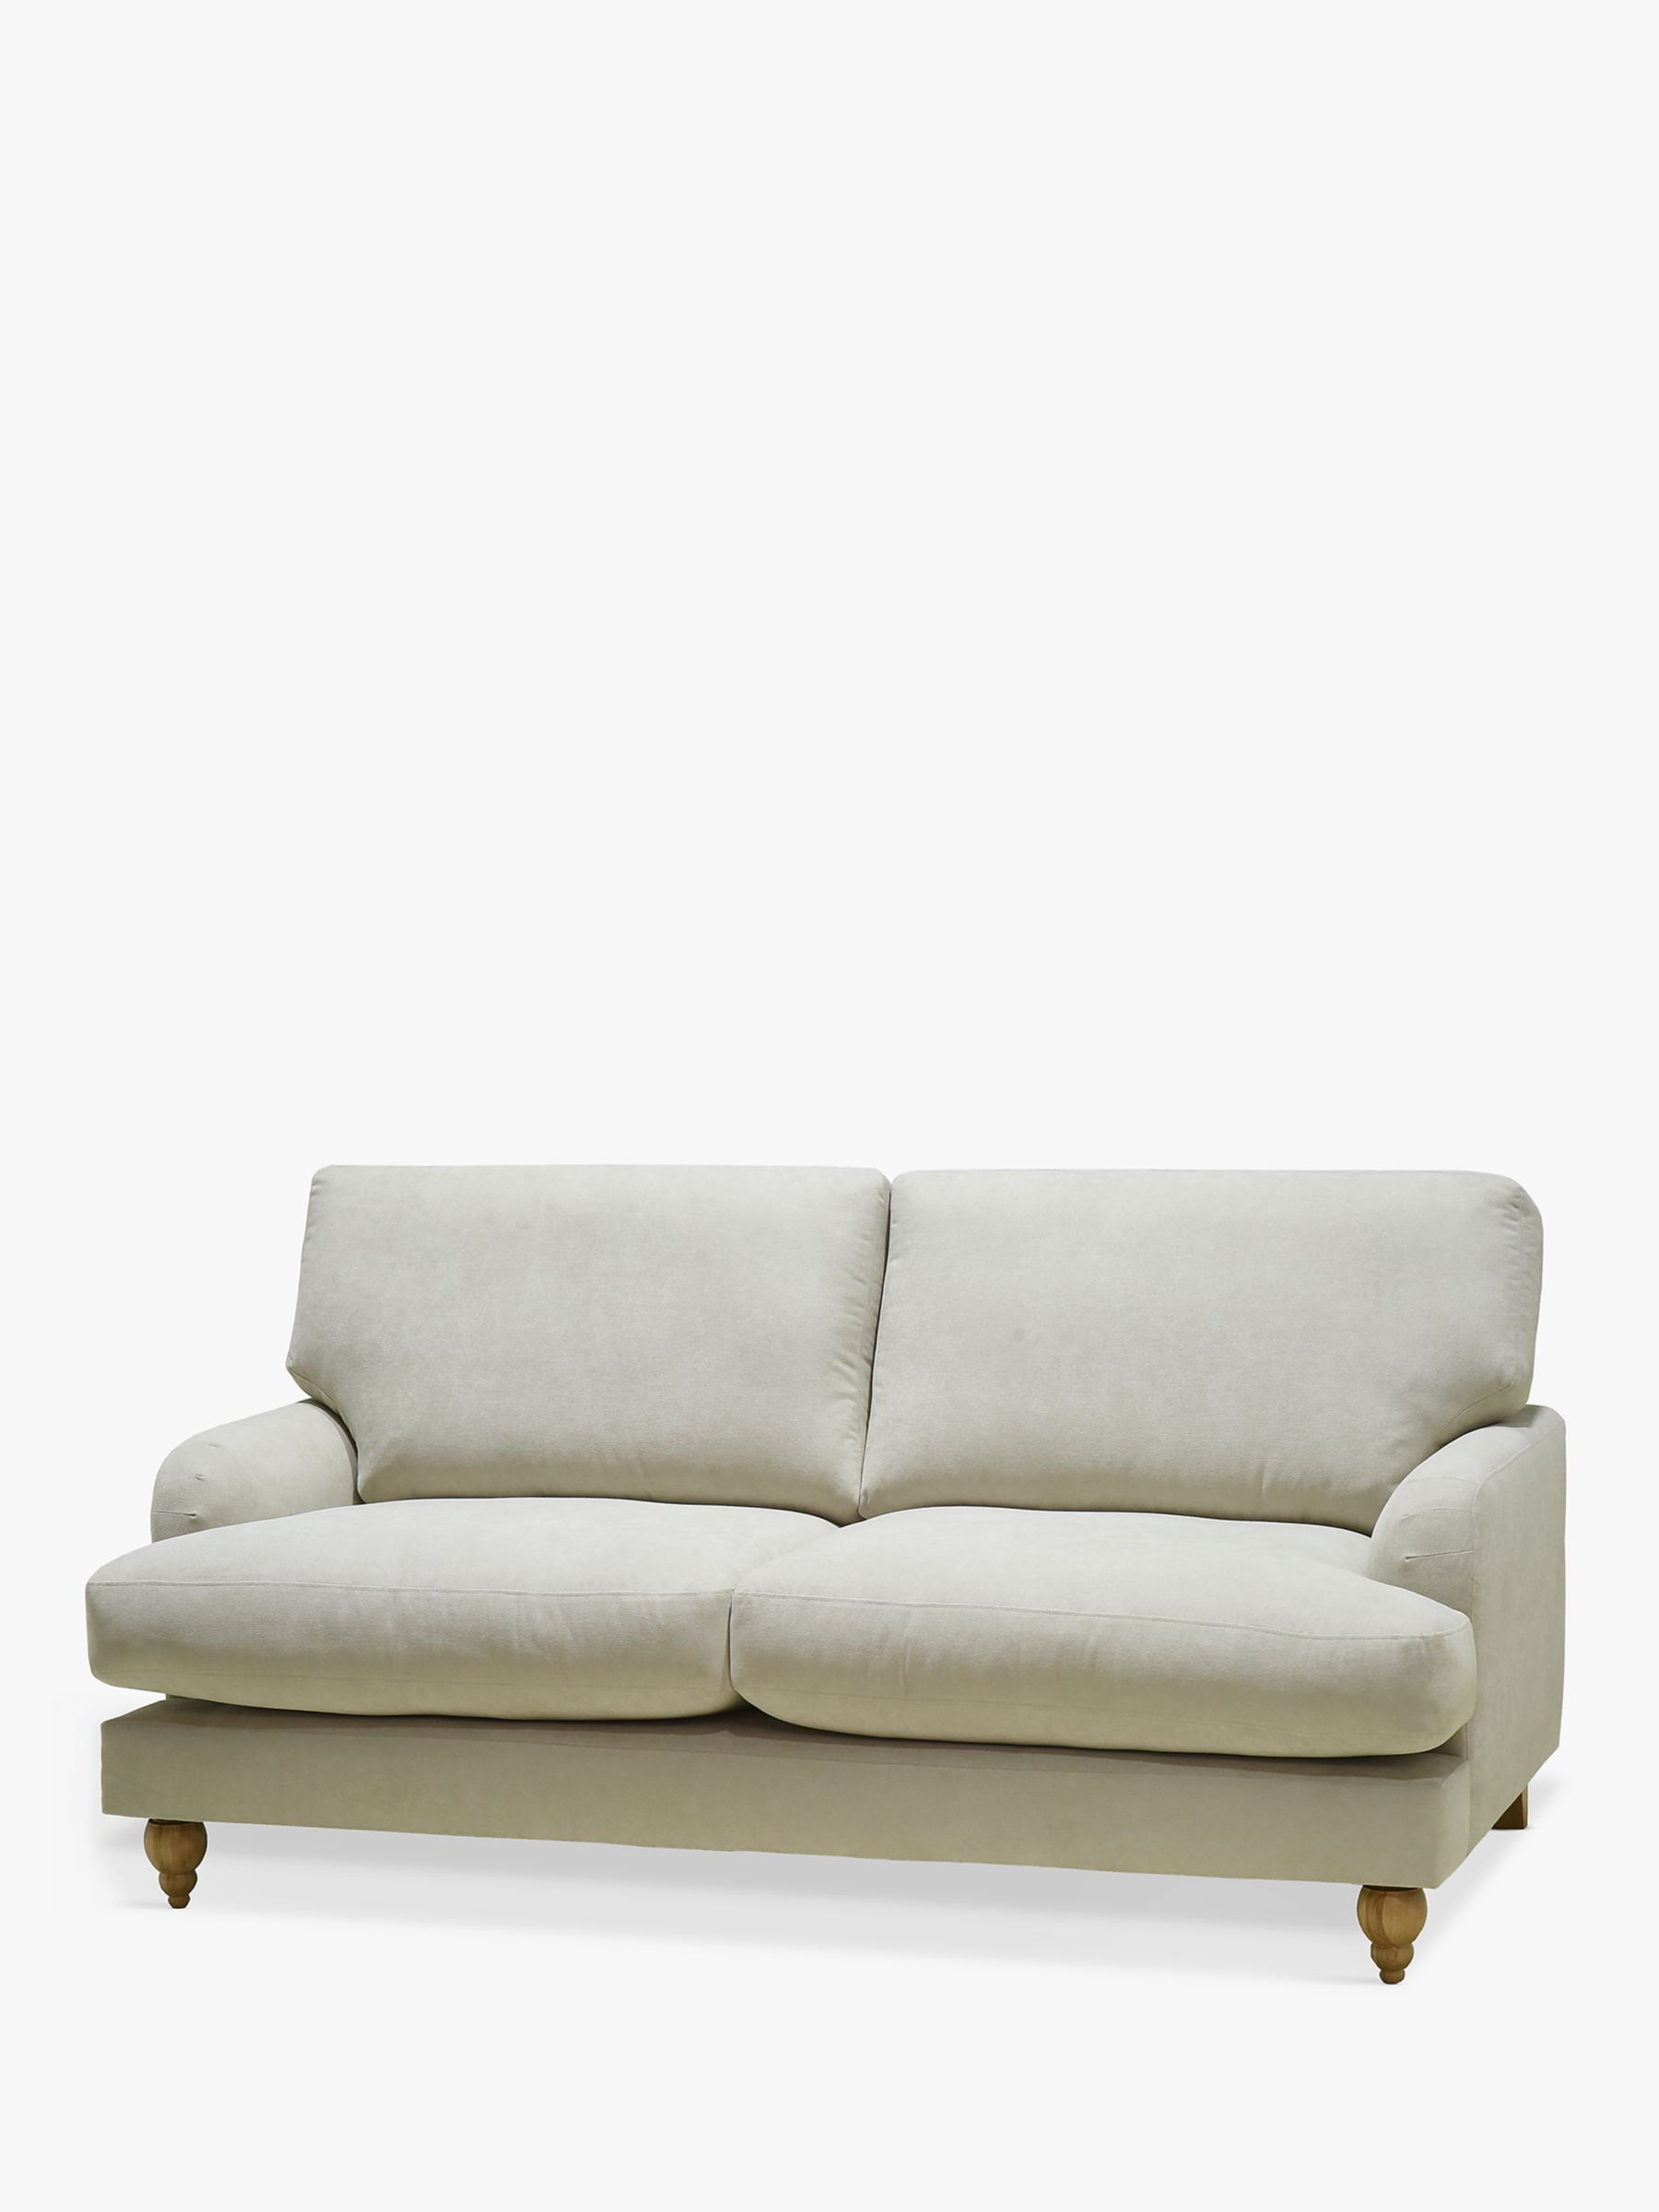 Clover Range, John Lewis Clover Small 2 Seater Sofa, Light Leg, Fine Chenille Natural